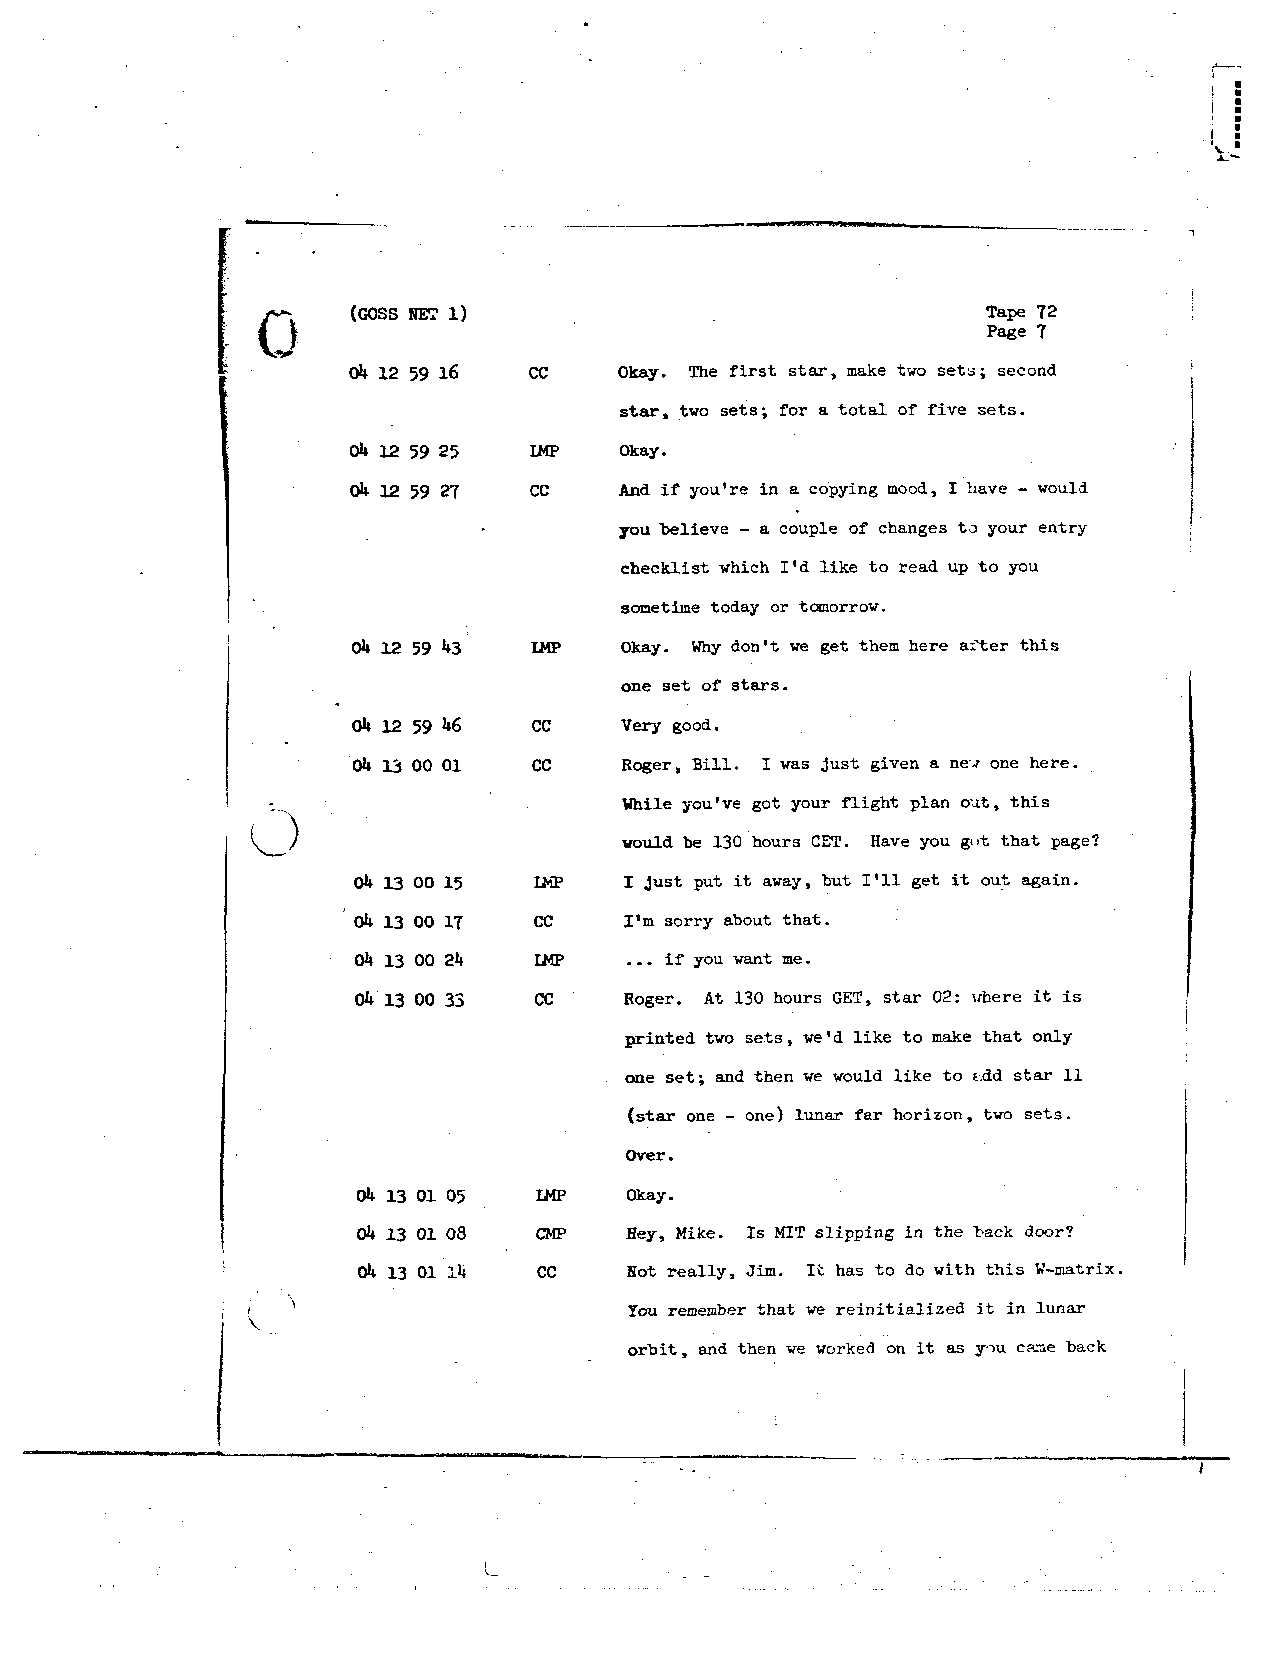 Page 580 of Apollo 8’s original transcript